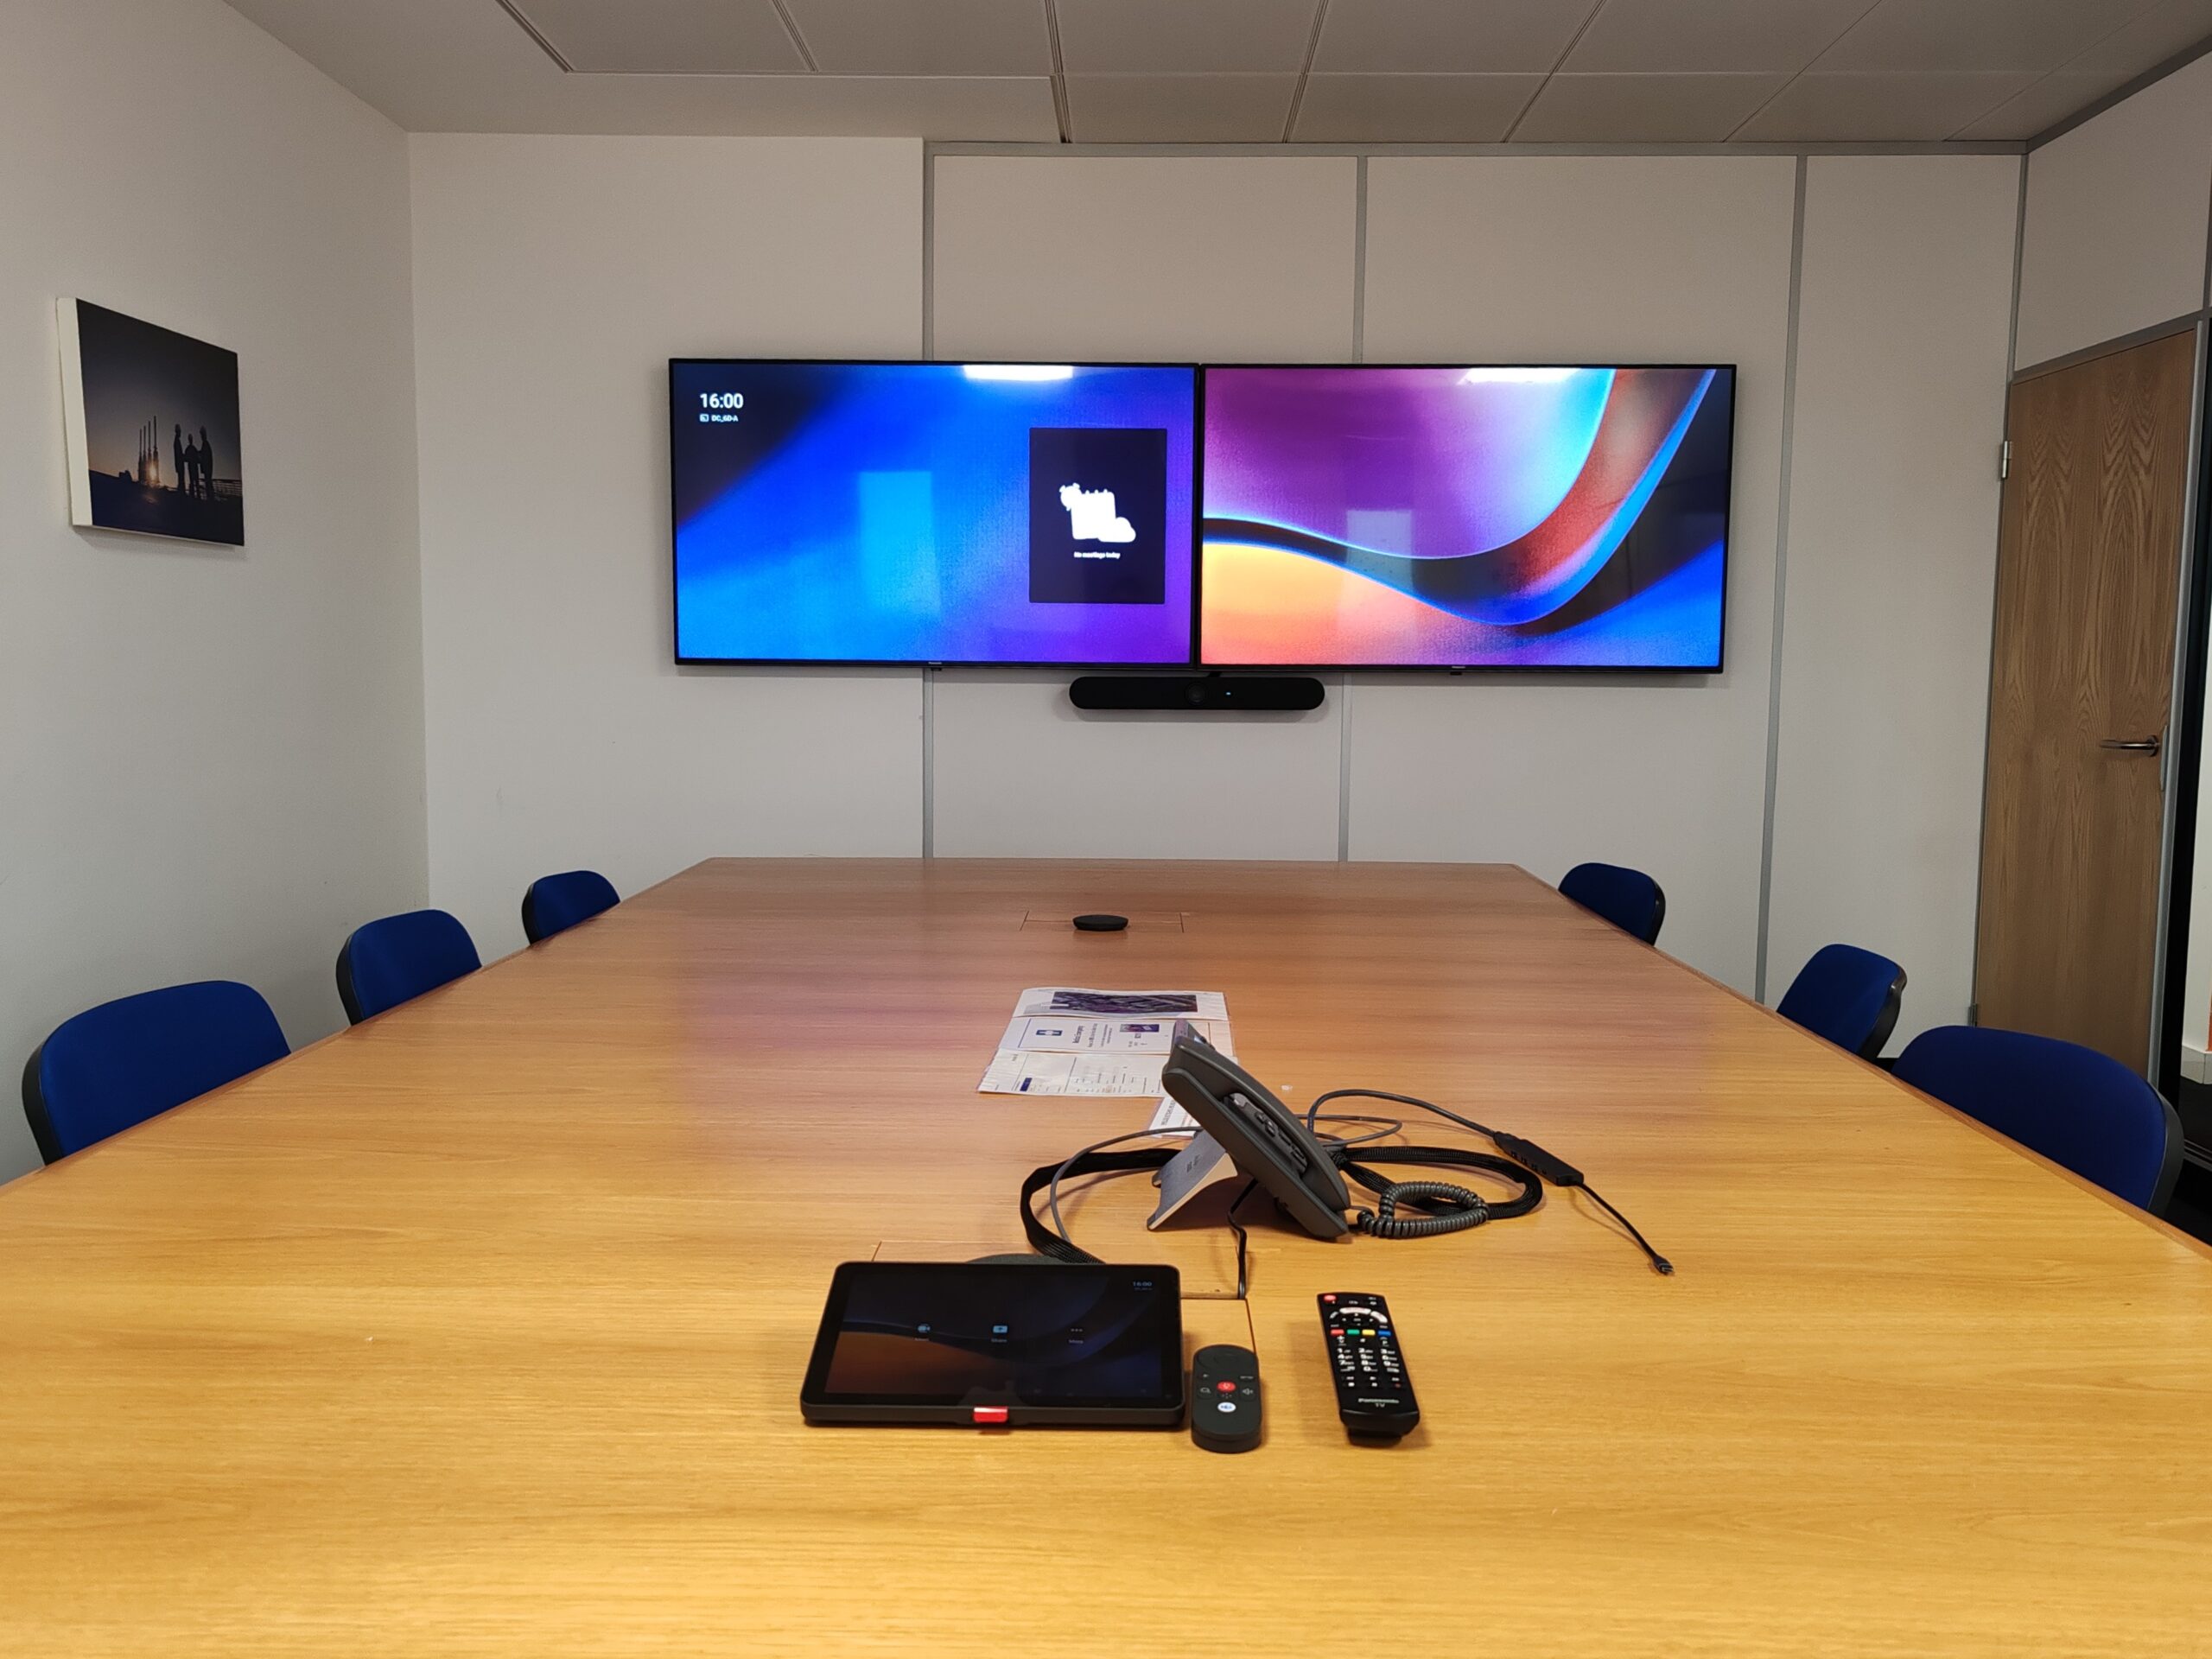 Microsoft Teams Rooms UK Project, AV Installation compny Runtech